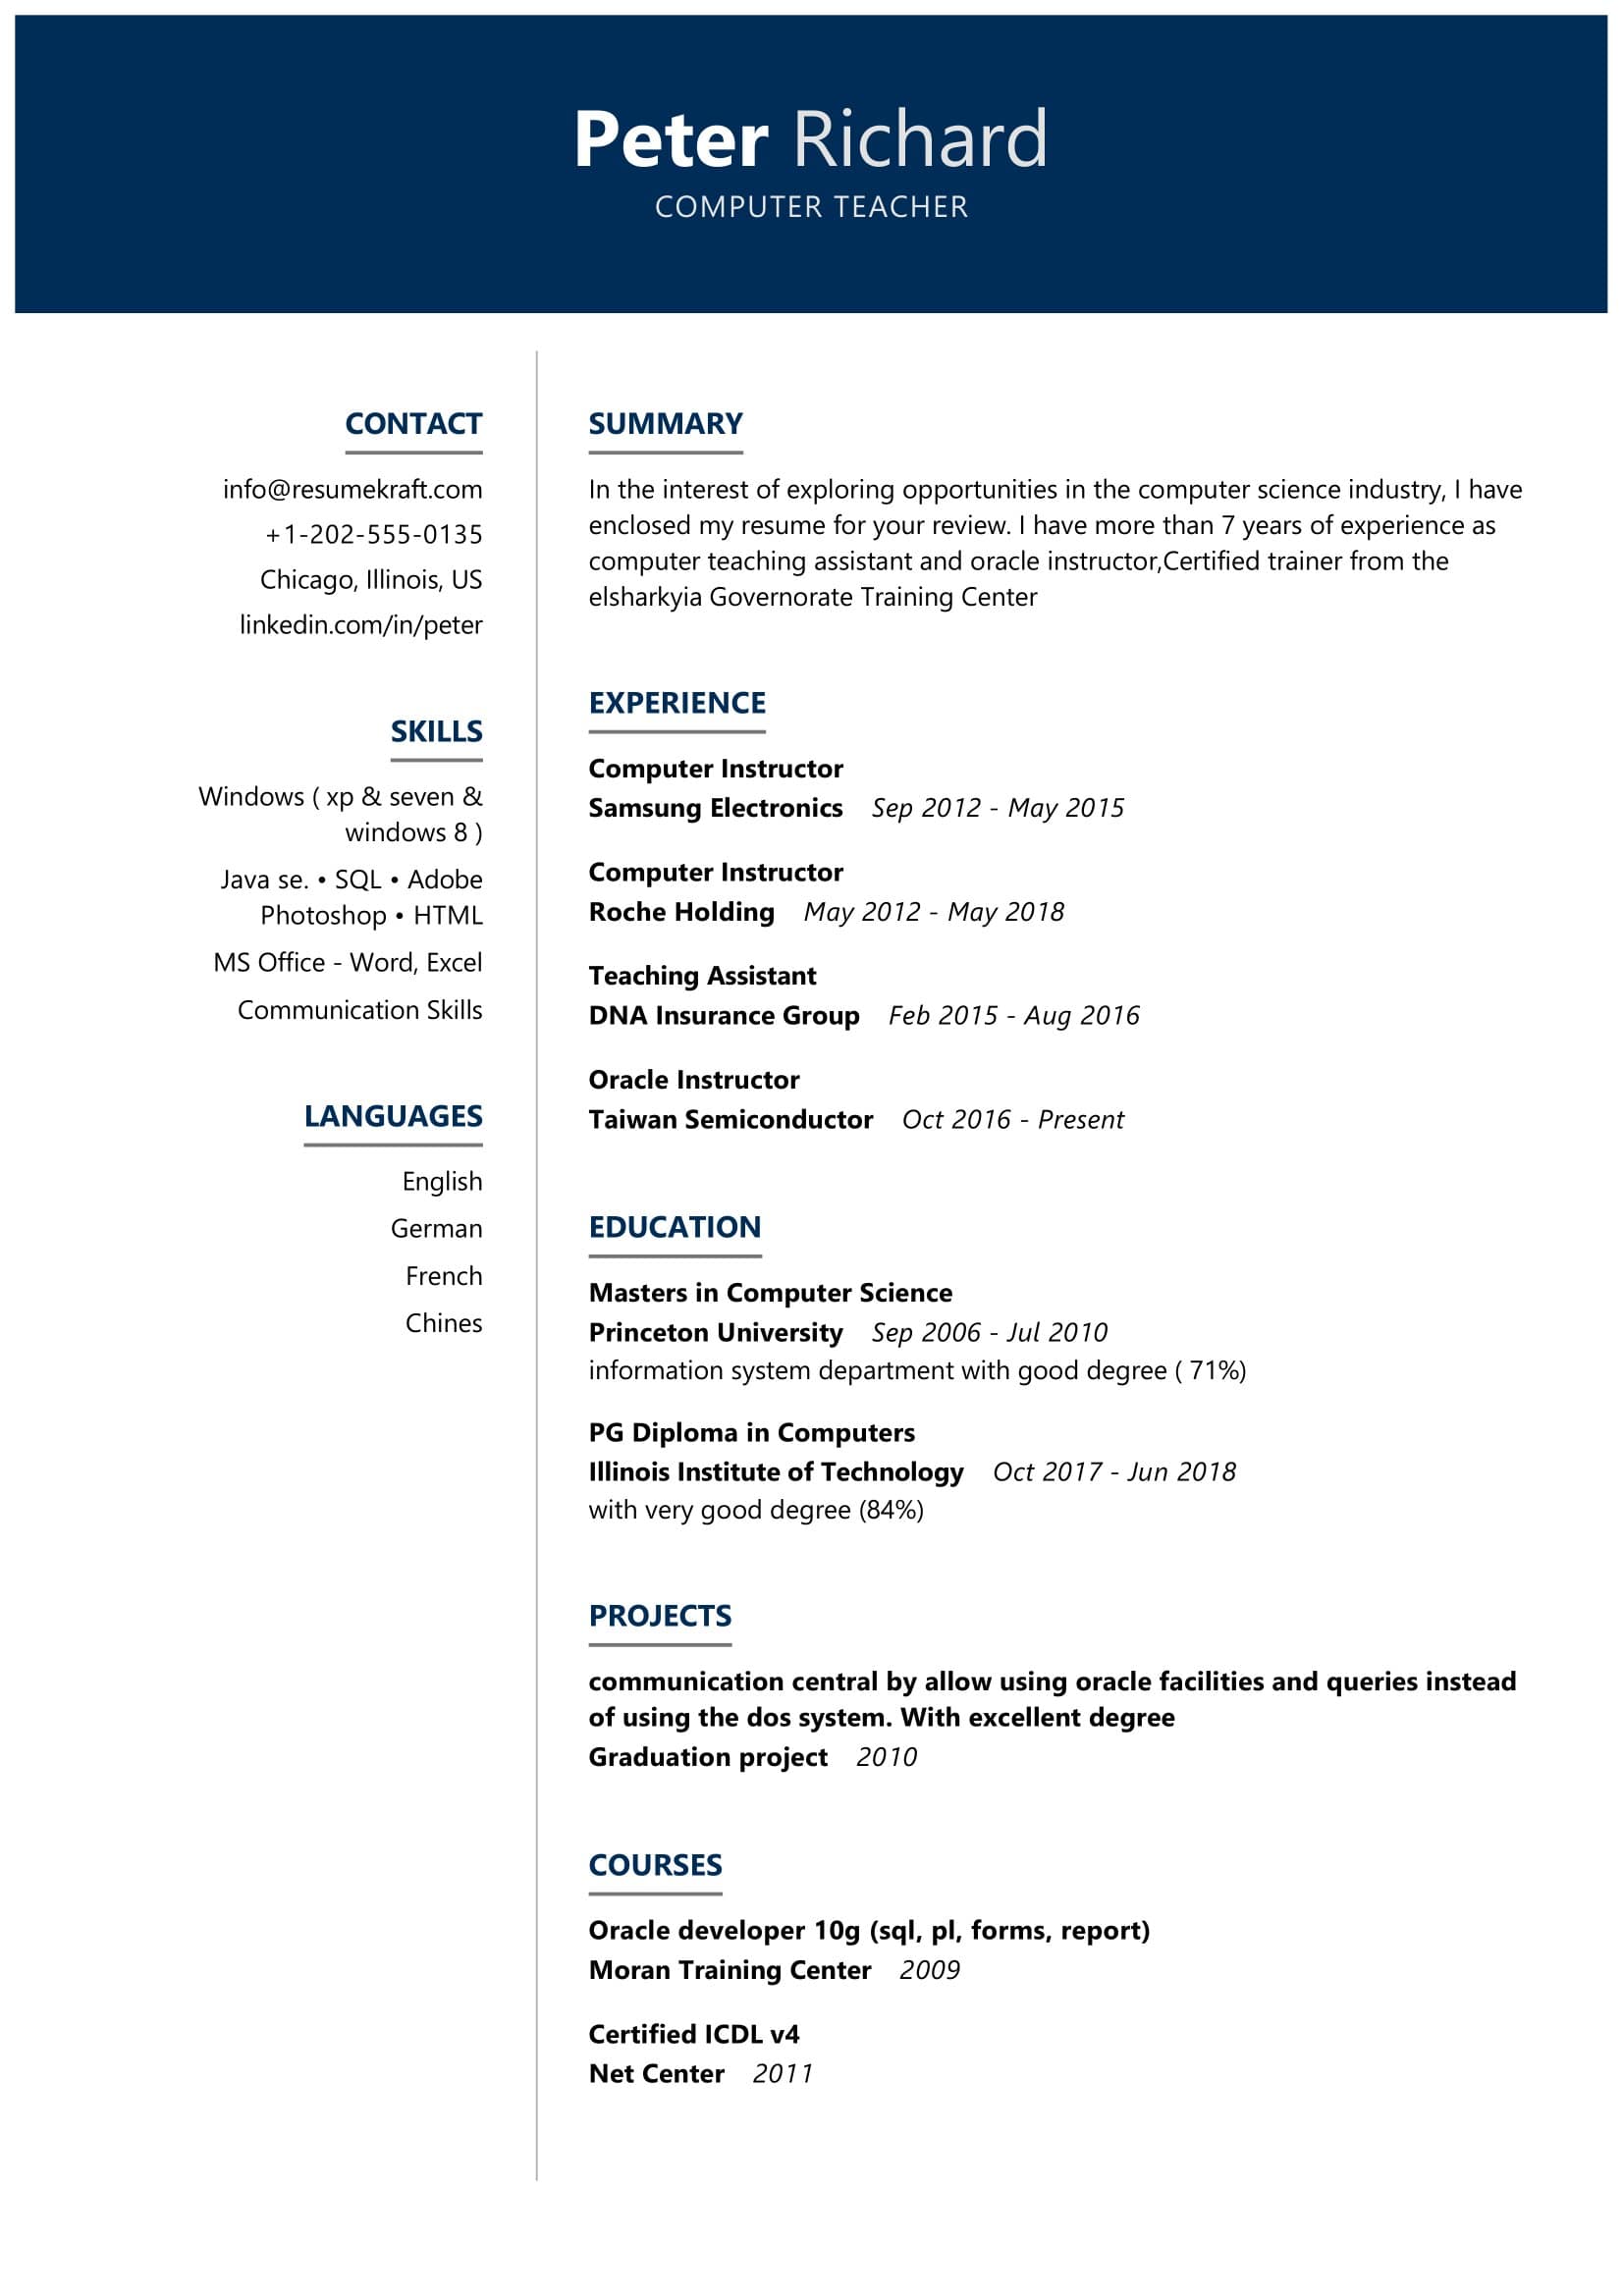 resume for computer teacher fresher in school